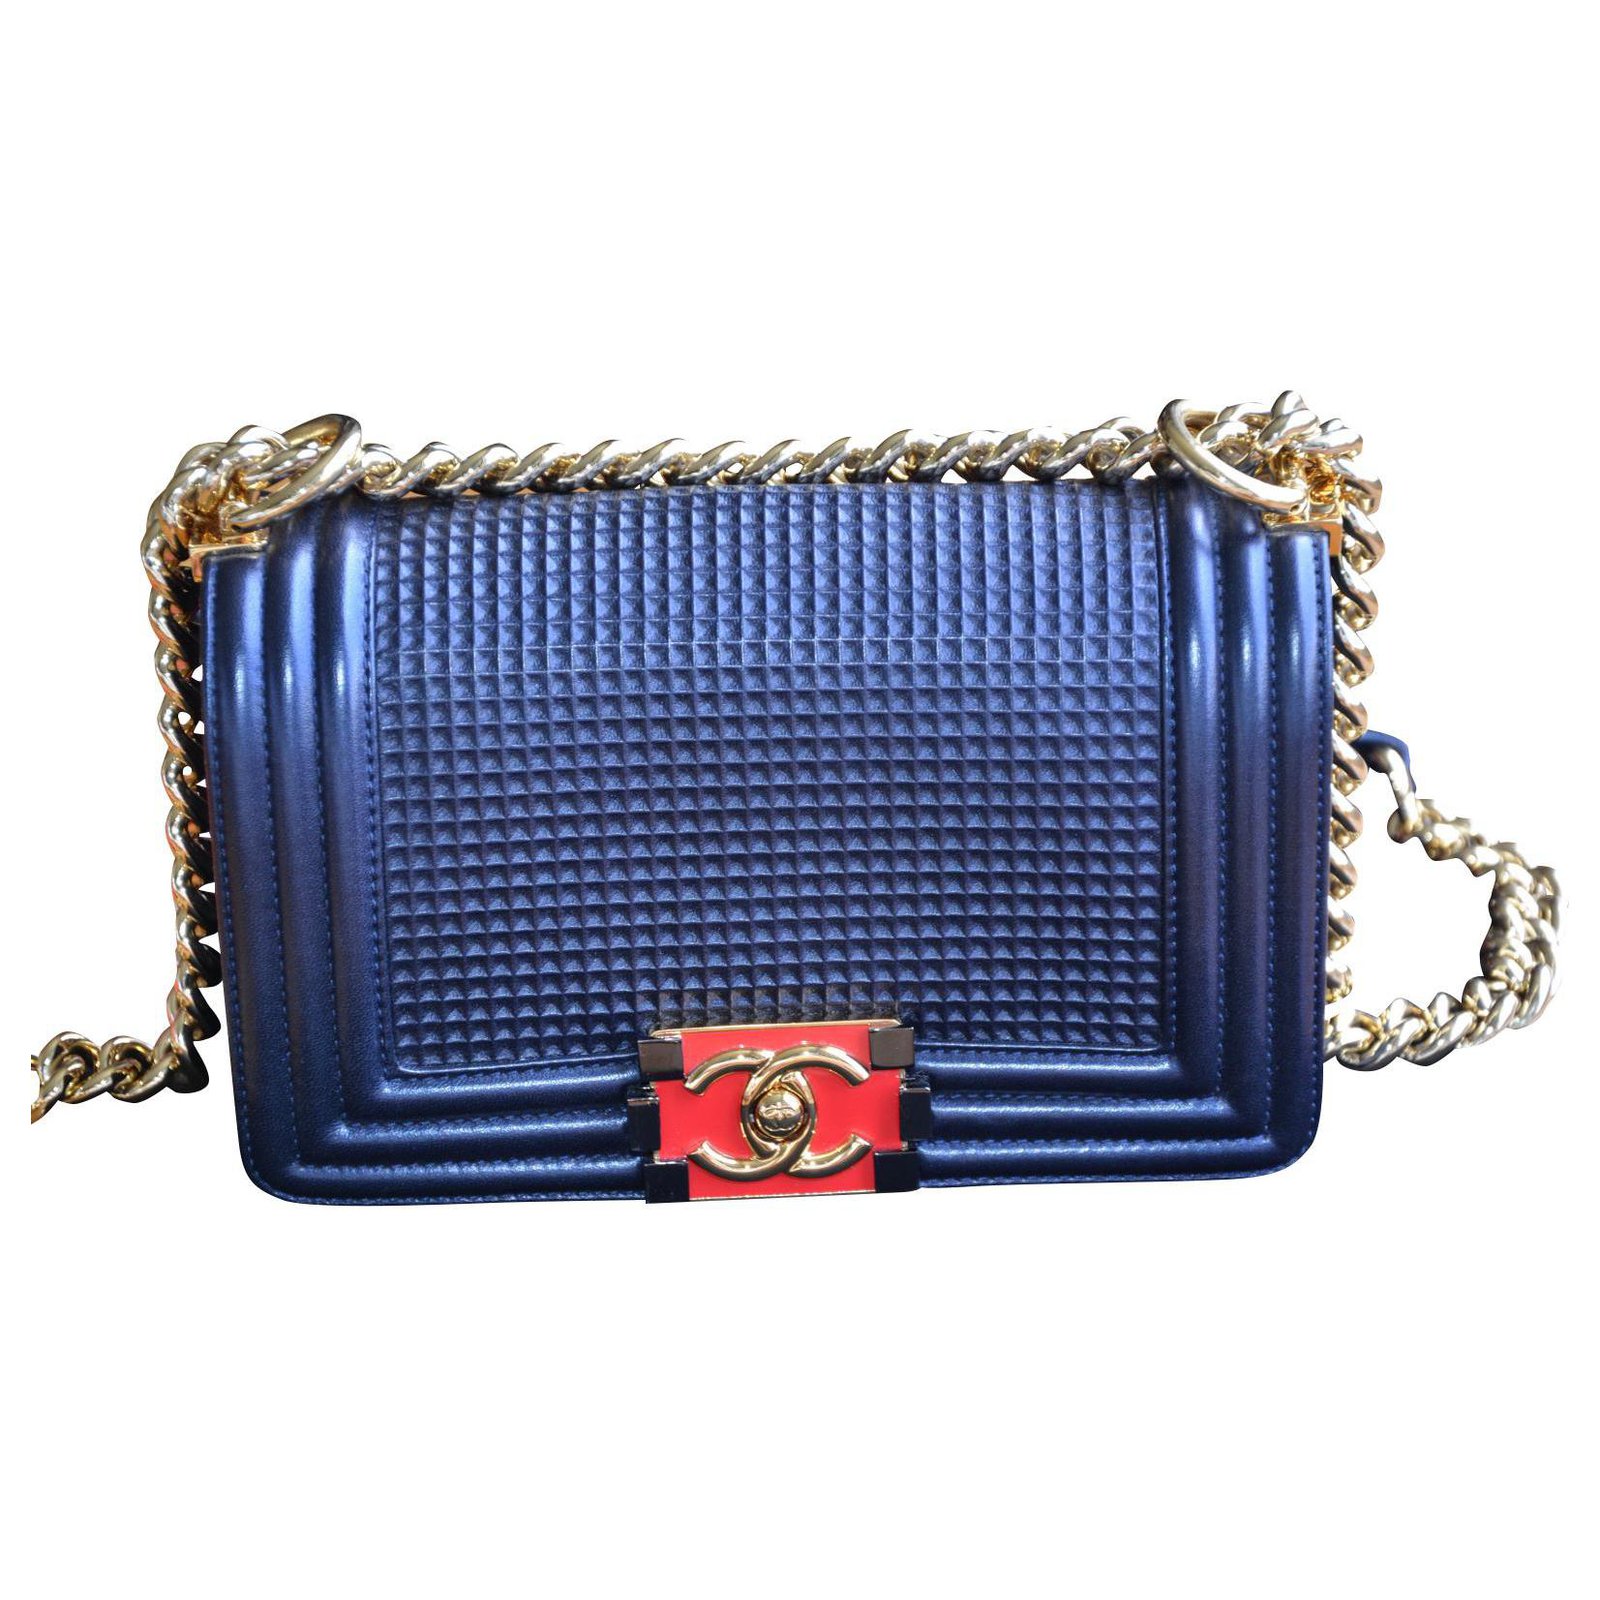 BOY CHANEL Chain Shoulder Bag Blue Navy Velvet Leather 45619